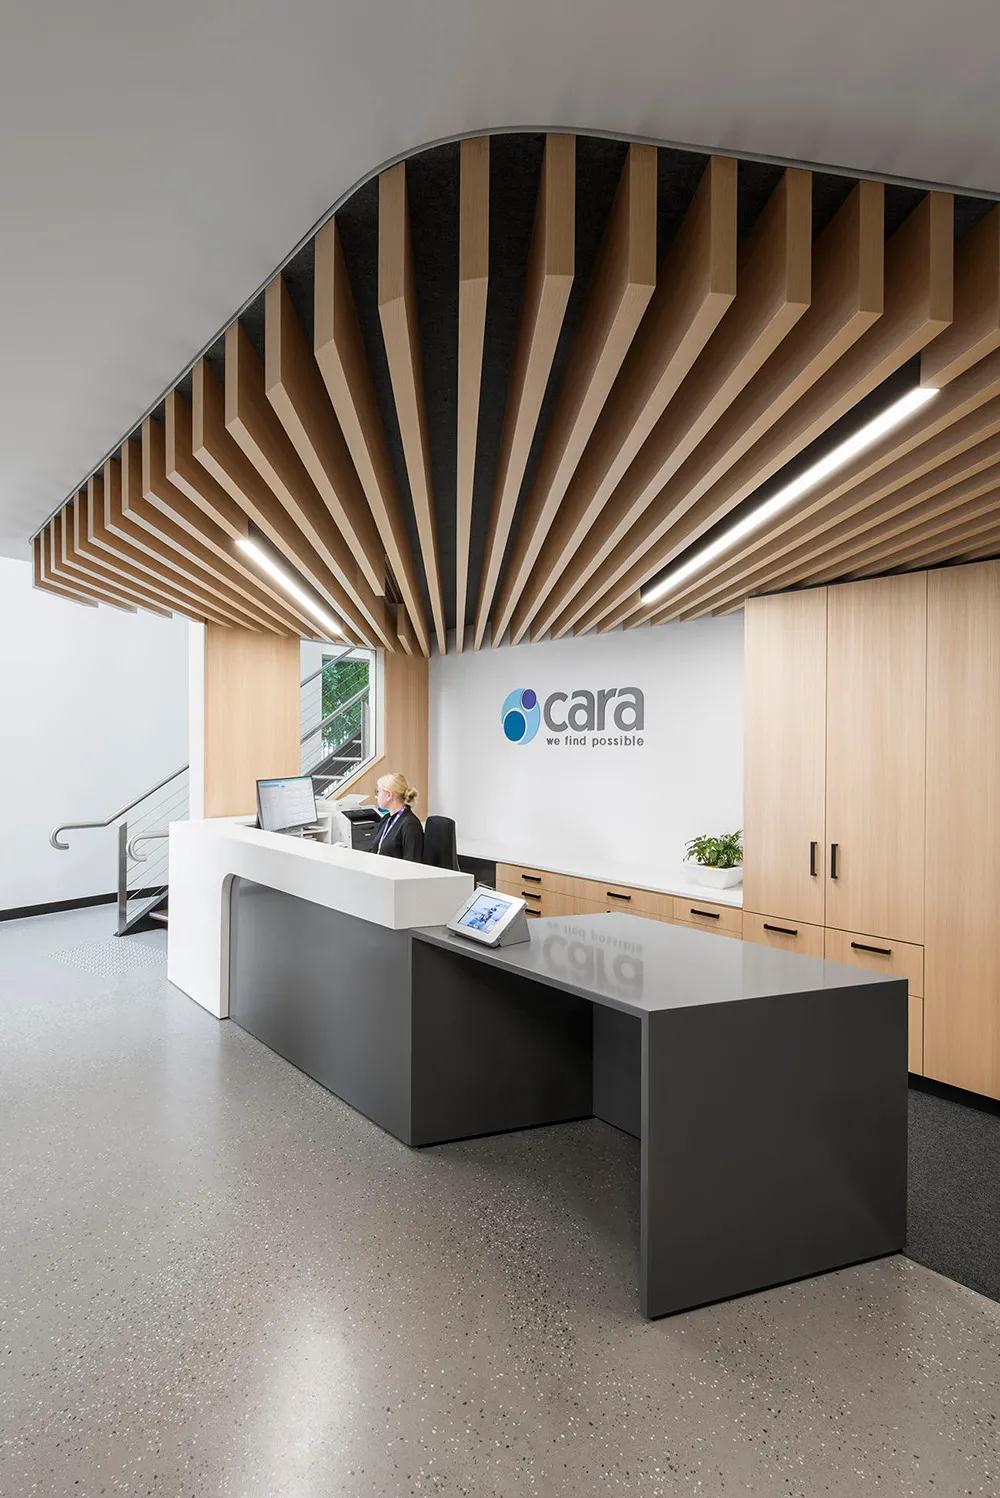 开放协作 非盈利组织Cara创意办公空间设计欣赏